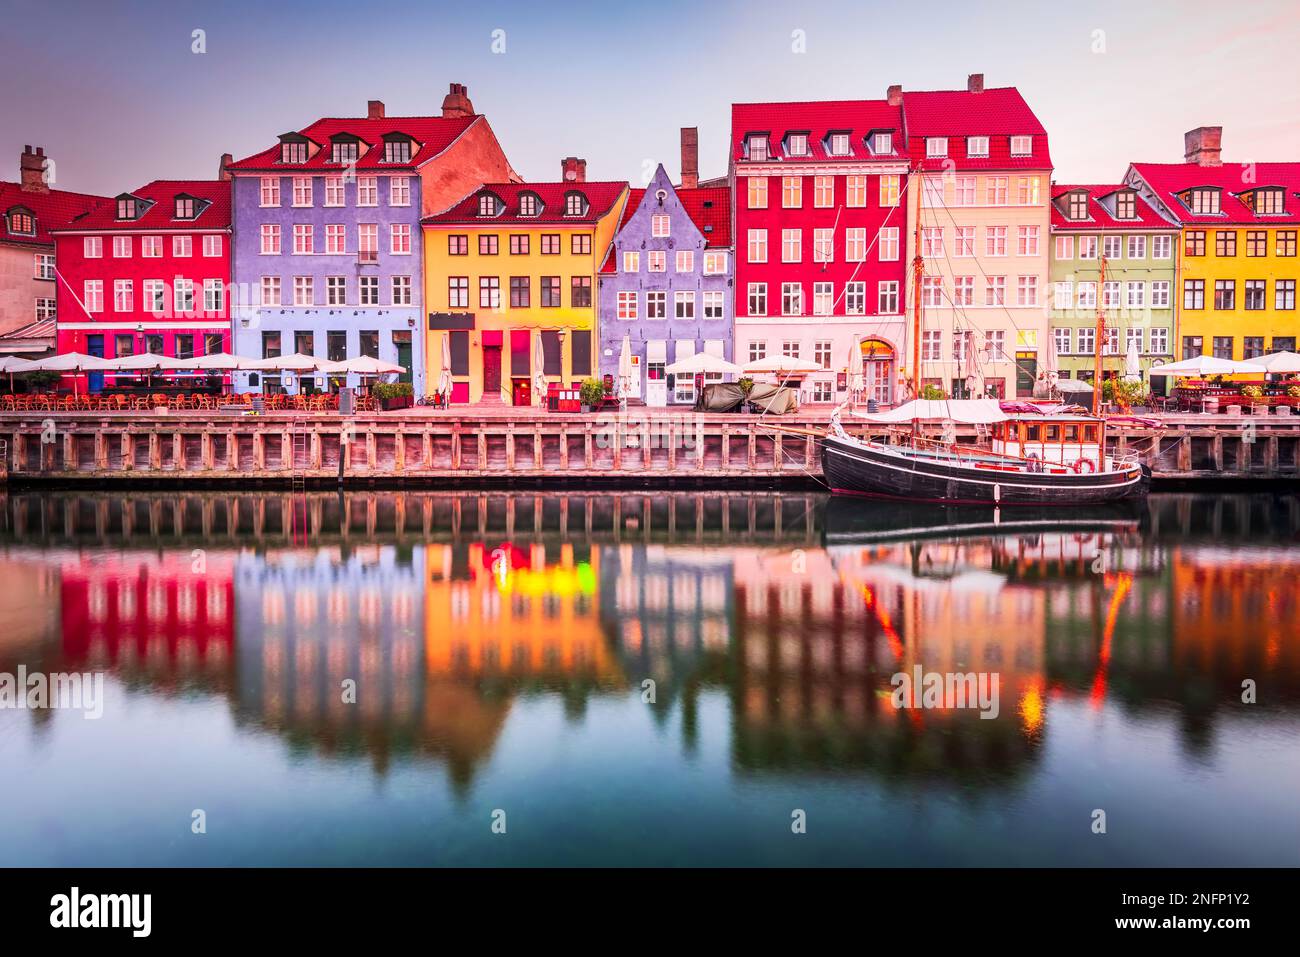 Copenhague, Danemark. Nyhavn, le canal emblématique de Kobenhavn, reflète des bâtiments colorés et des réverbères lumineux au crépuscule, créant ainsi un touris pittoresque Banque D'Images